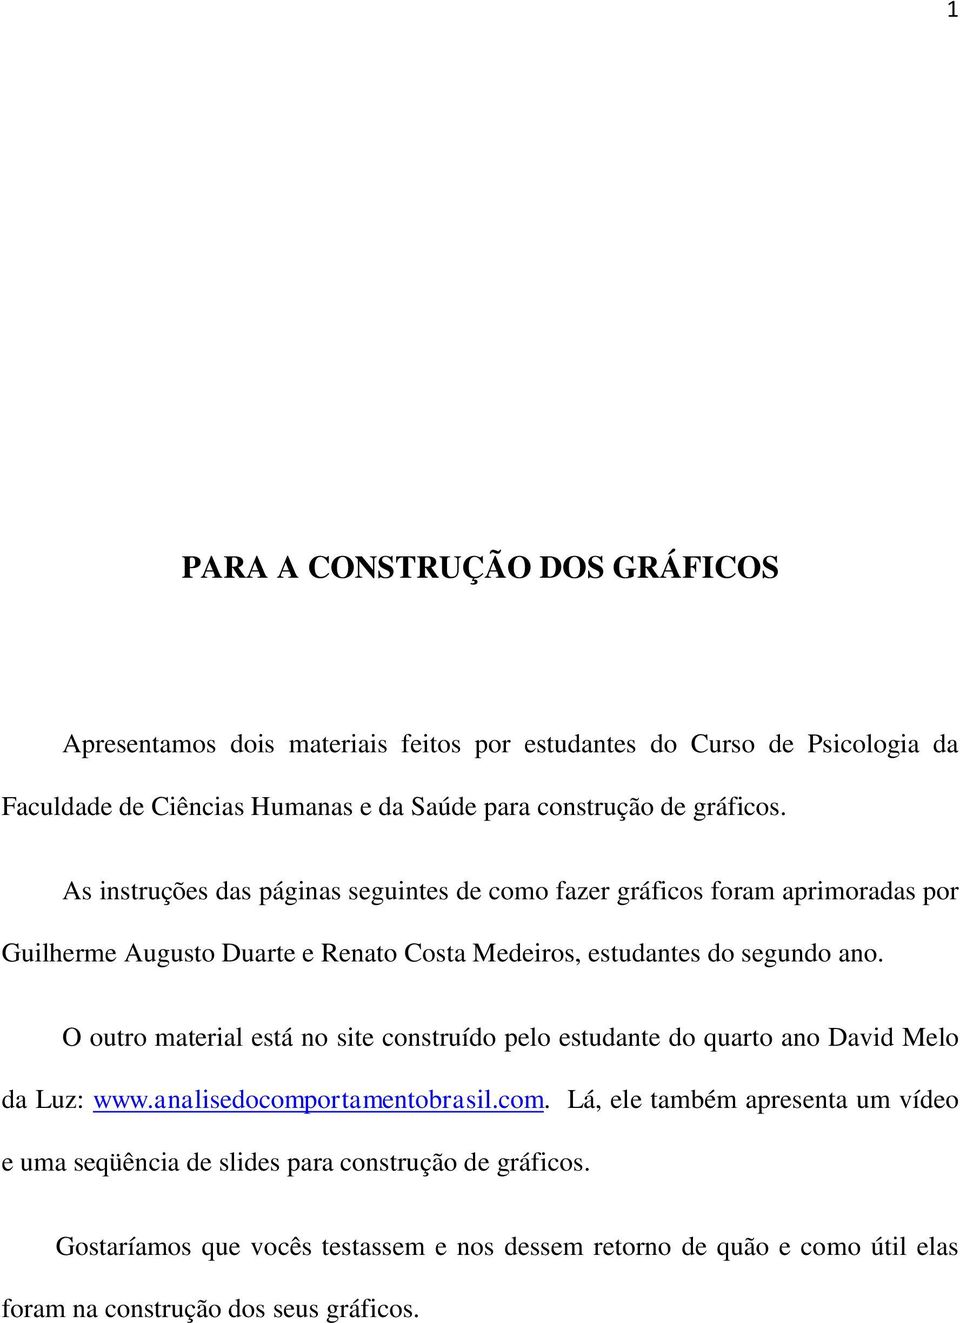 As instruções das páginas seguintes de como fazer gráficos foram aprimoradas por Guilherme Augusto Duarte e Renato Costa Medeiros, estudantes do segundo ano.